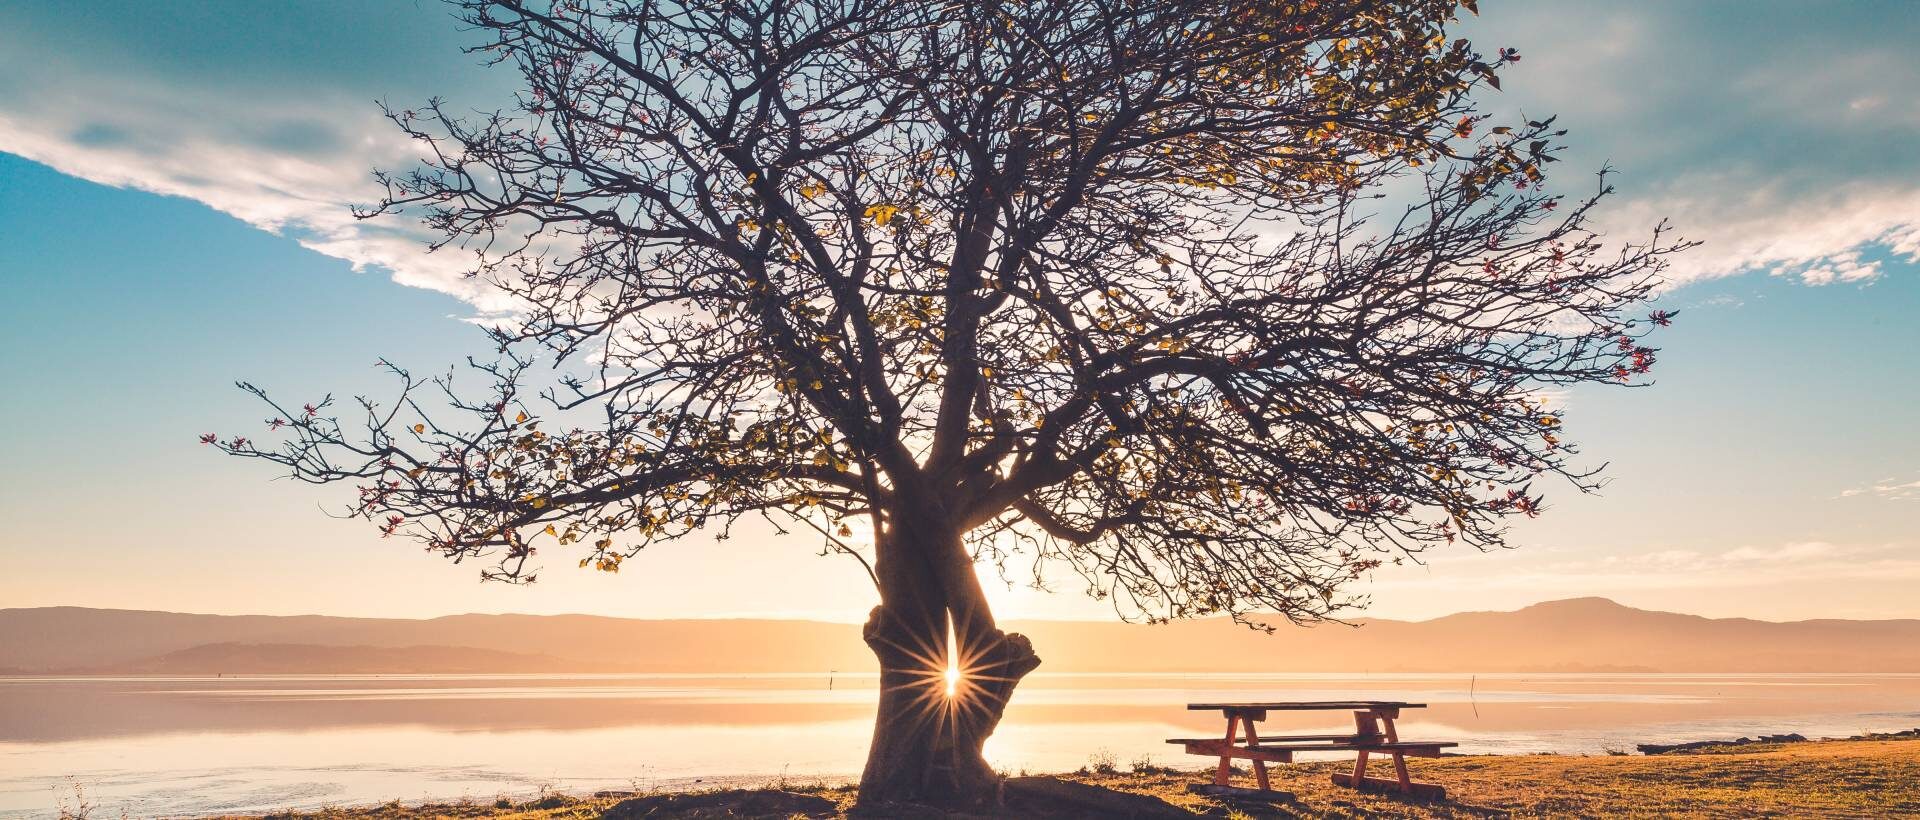 Baum im Sonnenlicht sinnbildlich für die Schritte hinter dem Instagram Marketing.